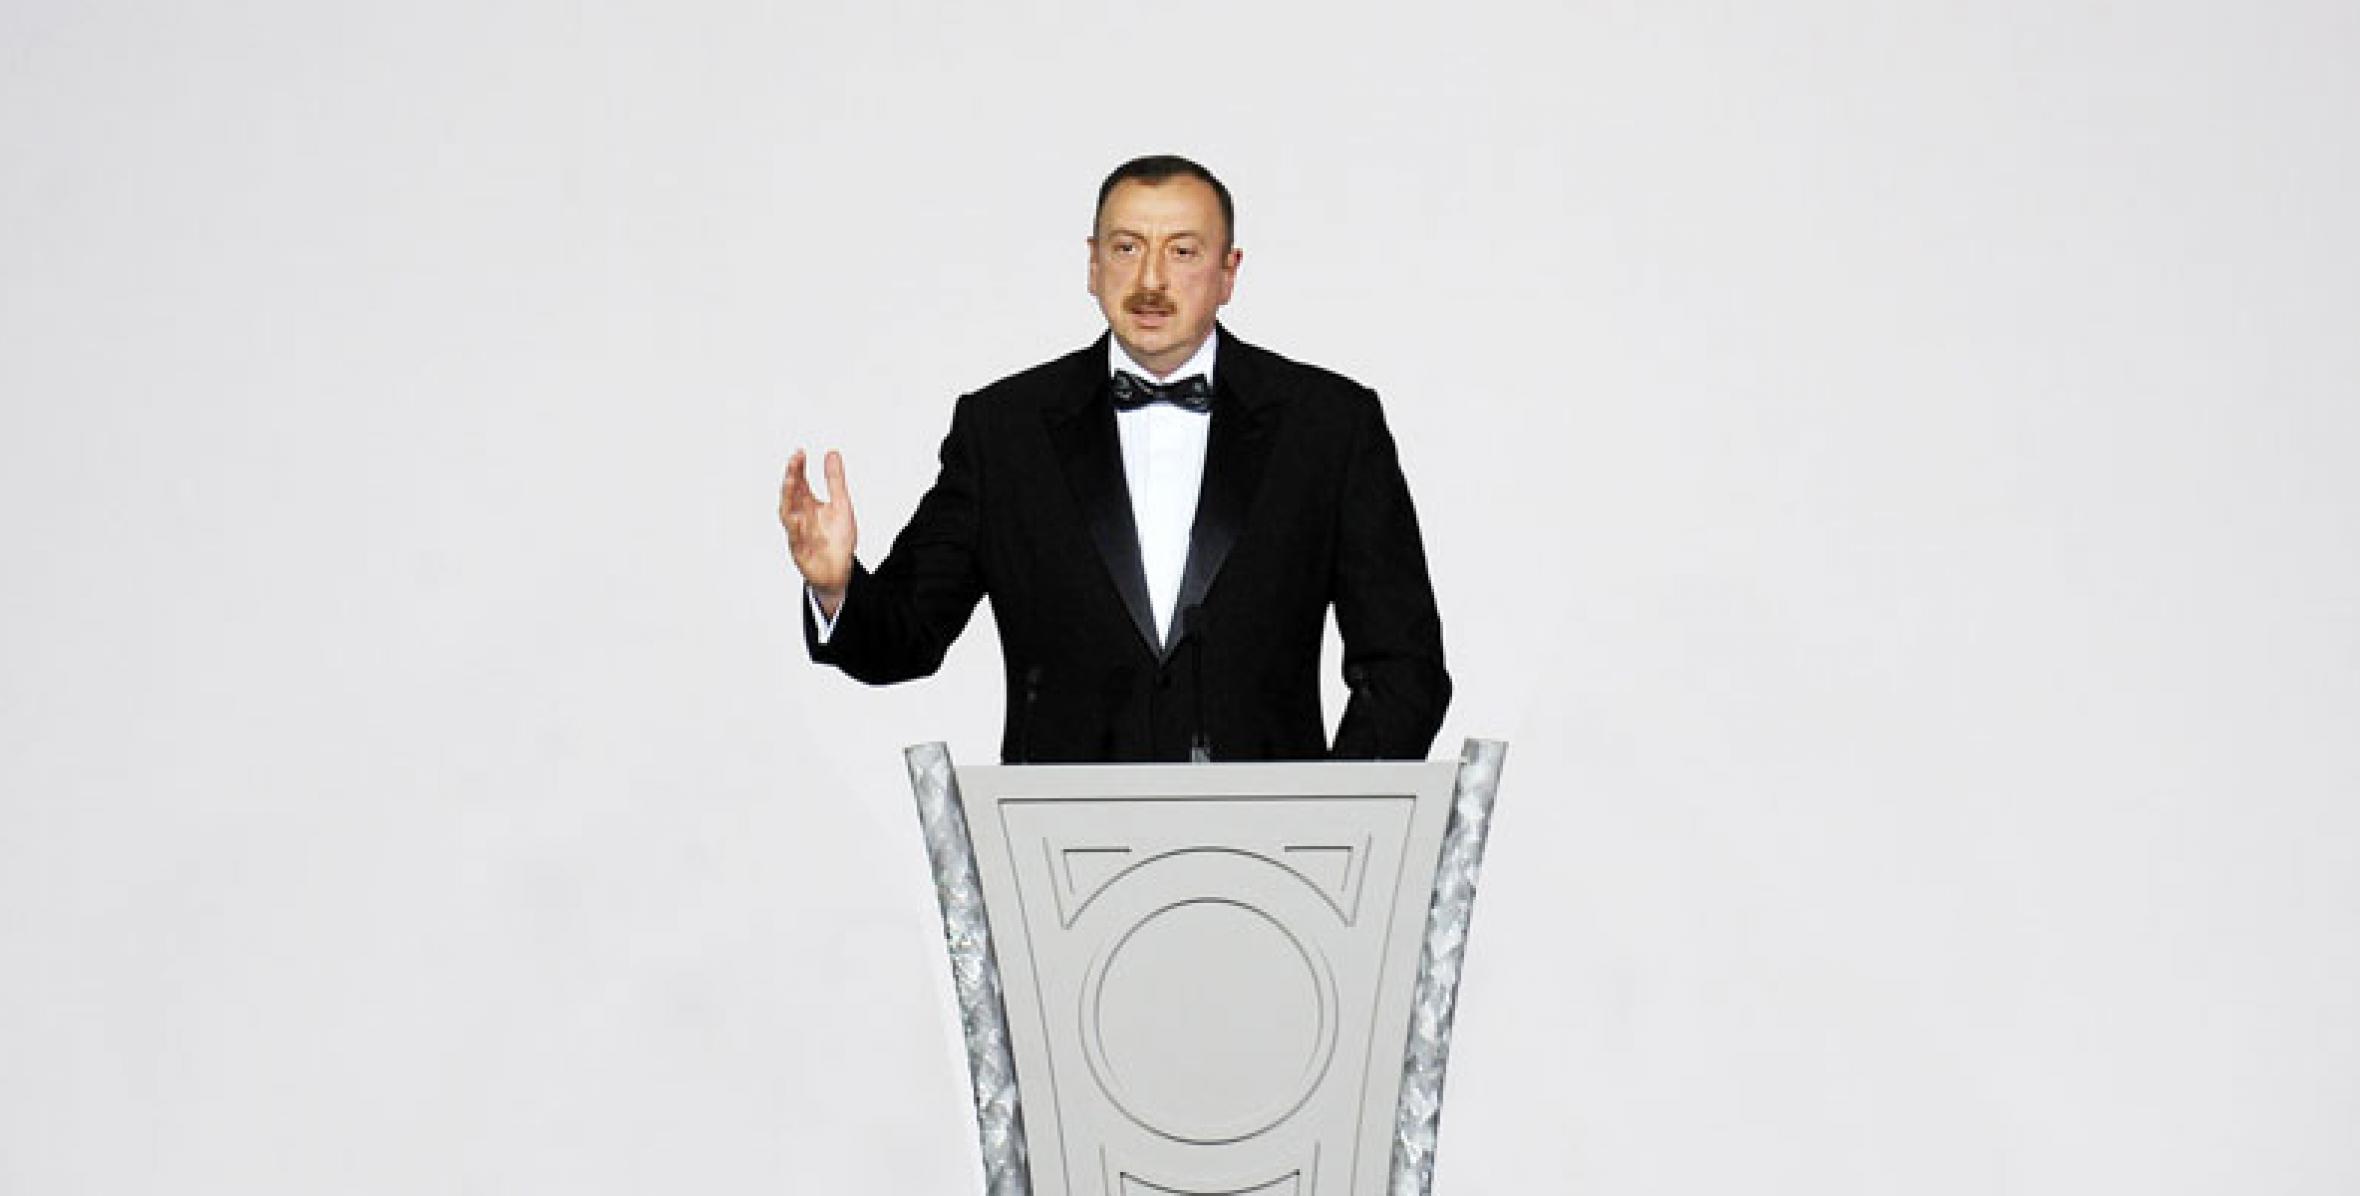 Ильхам Алиев принял участие в церемонии по случаю 87-й годовщины со дня рождения общенационального лидера Гейдара Алиева и 6-летия начала деятельности Фонда Гейдара Алиева